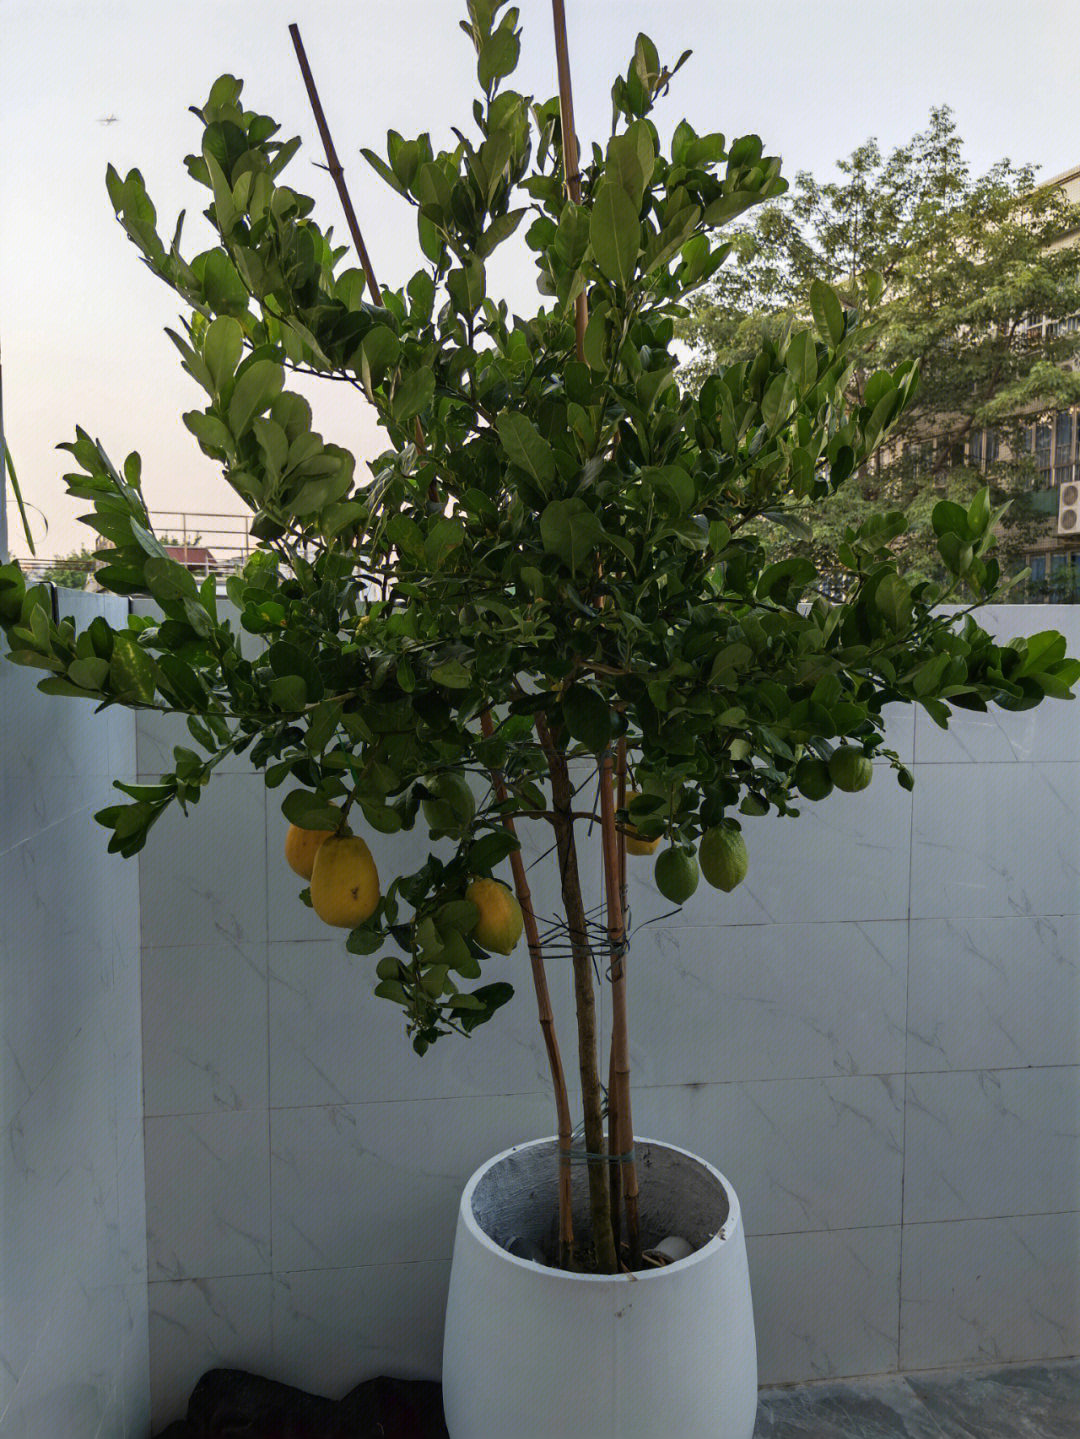 怎么办!好想哭!新买的柠檬树,那是三天前的状态叶子都脆了,还能救吗?